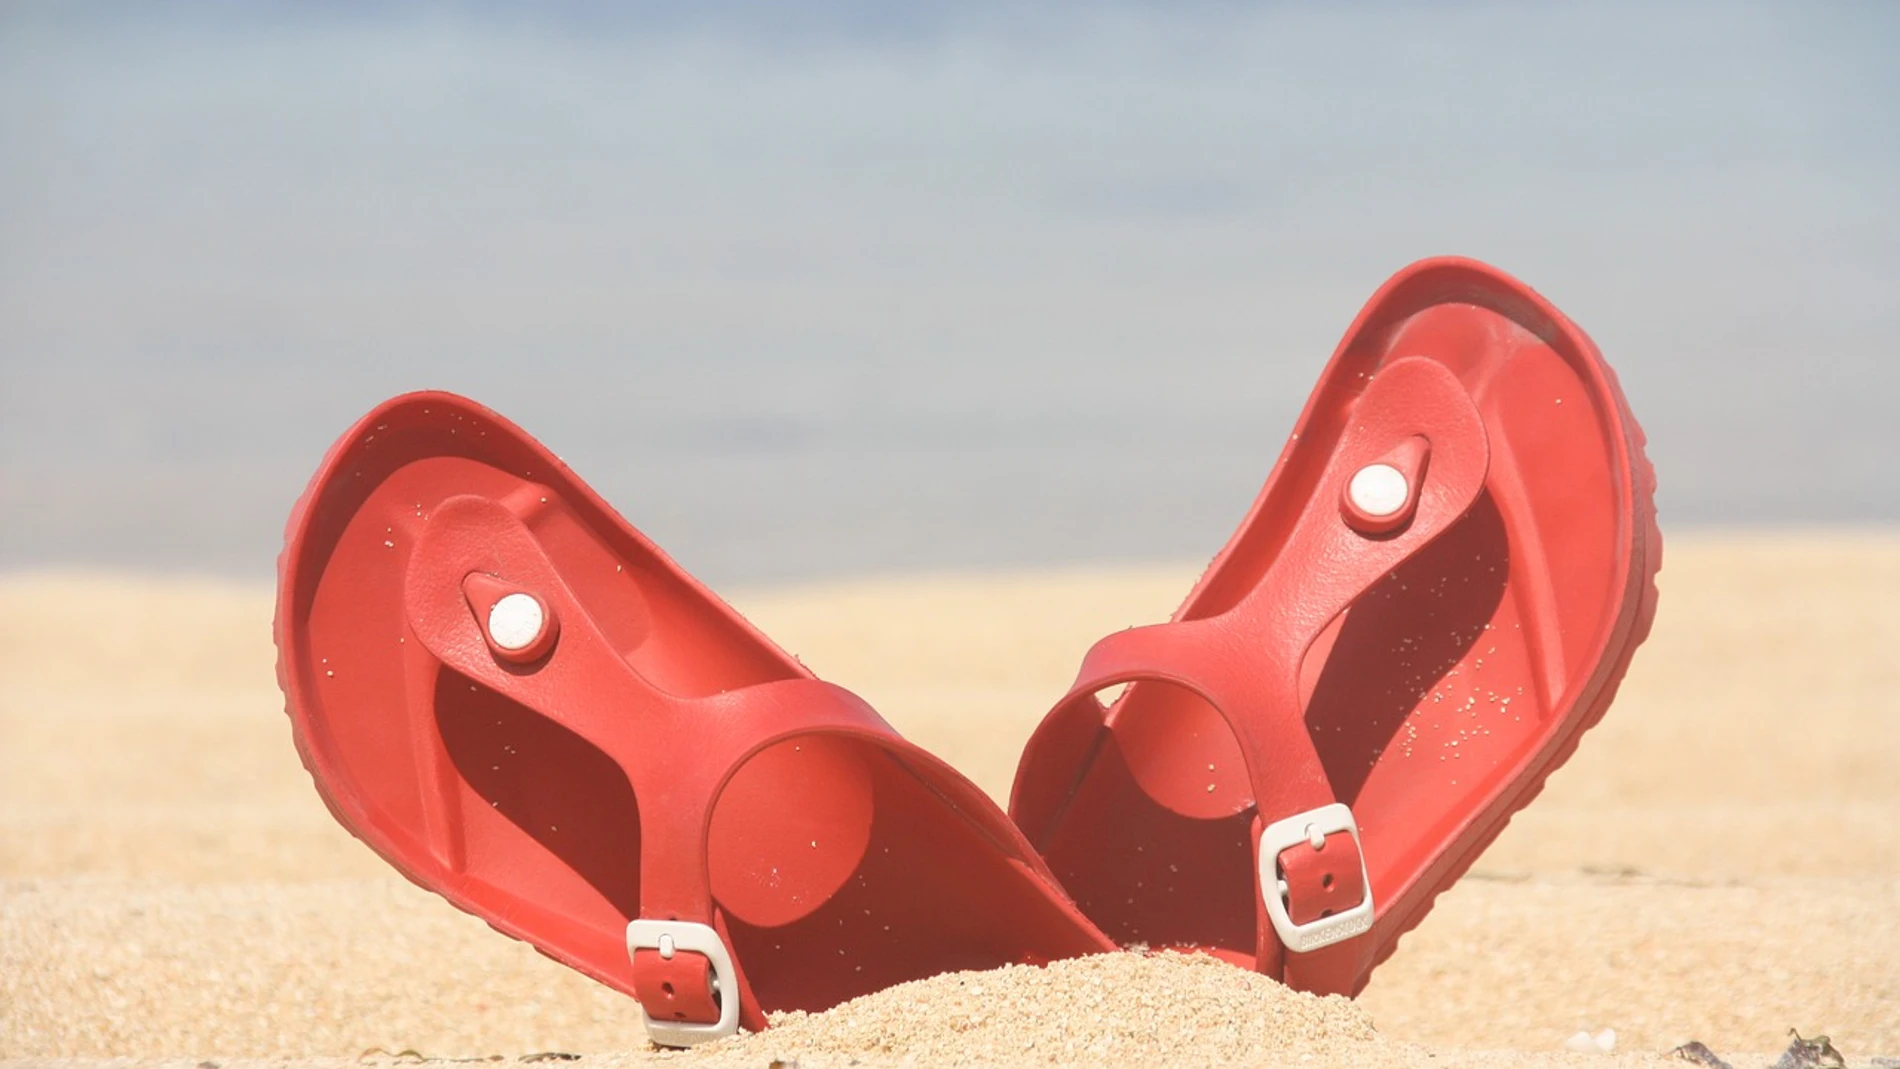 Imagen de unas chanclas en la arena de la playa